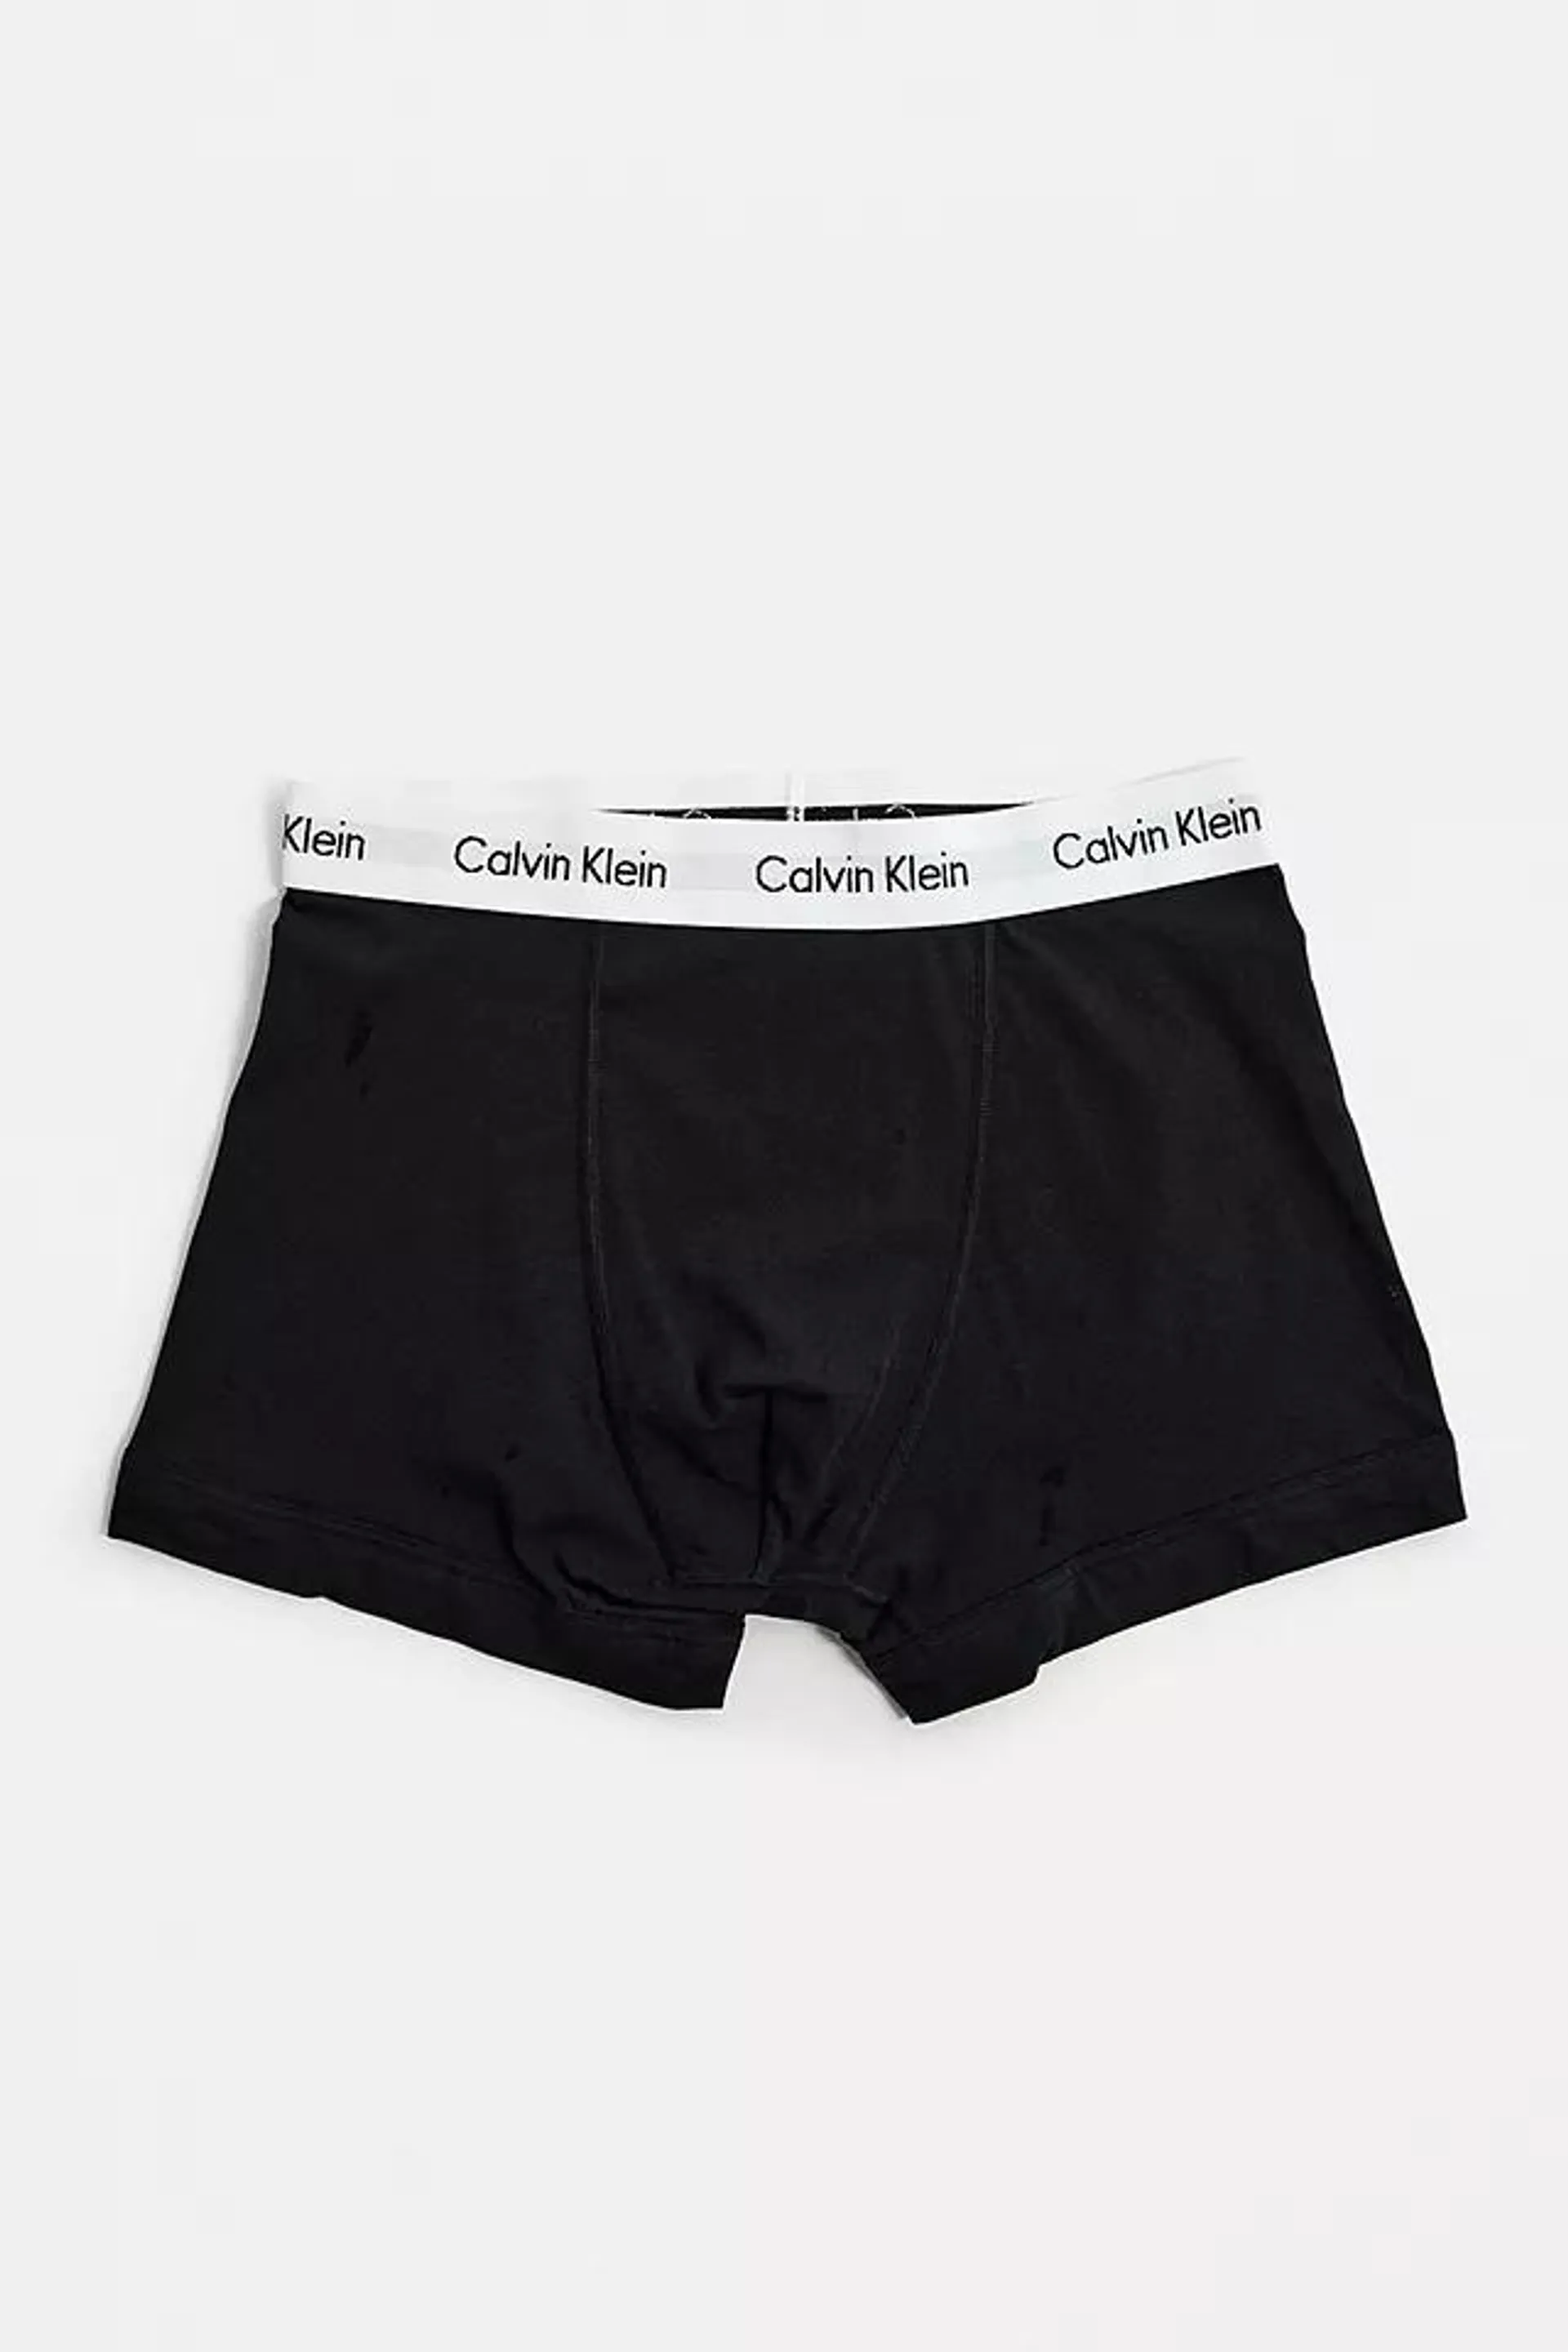 Calvin Klein - Lot de 3 boxers noir et blanc